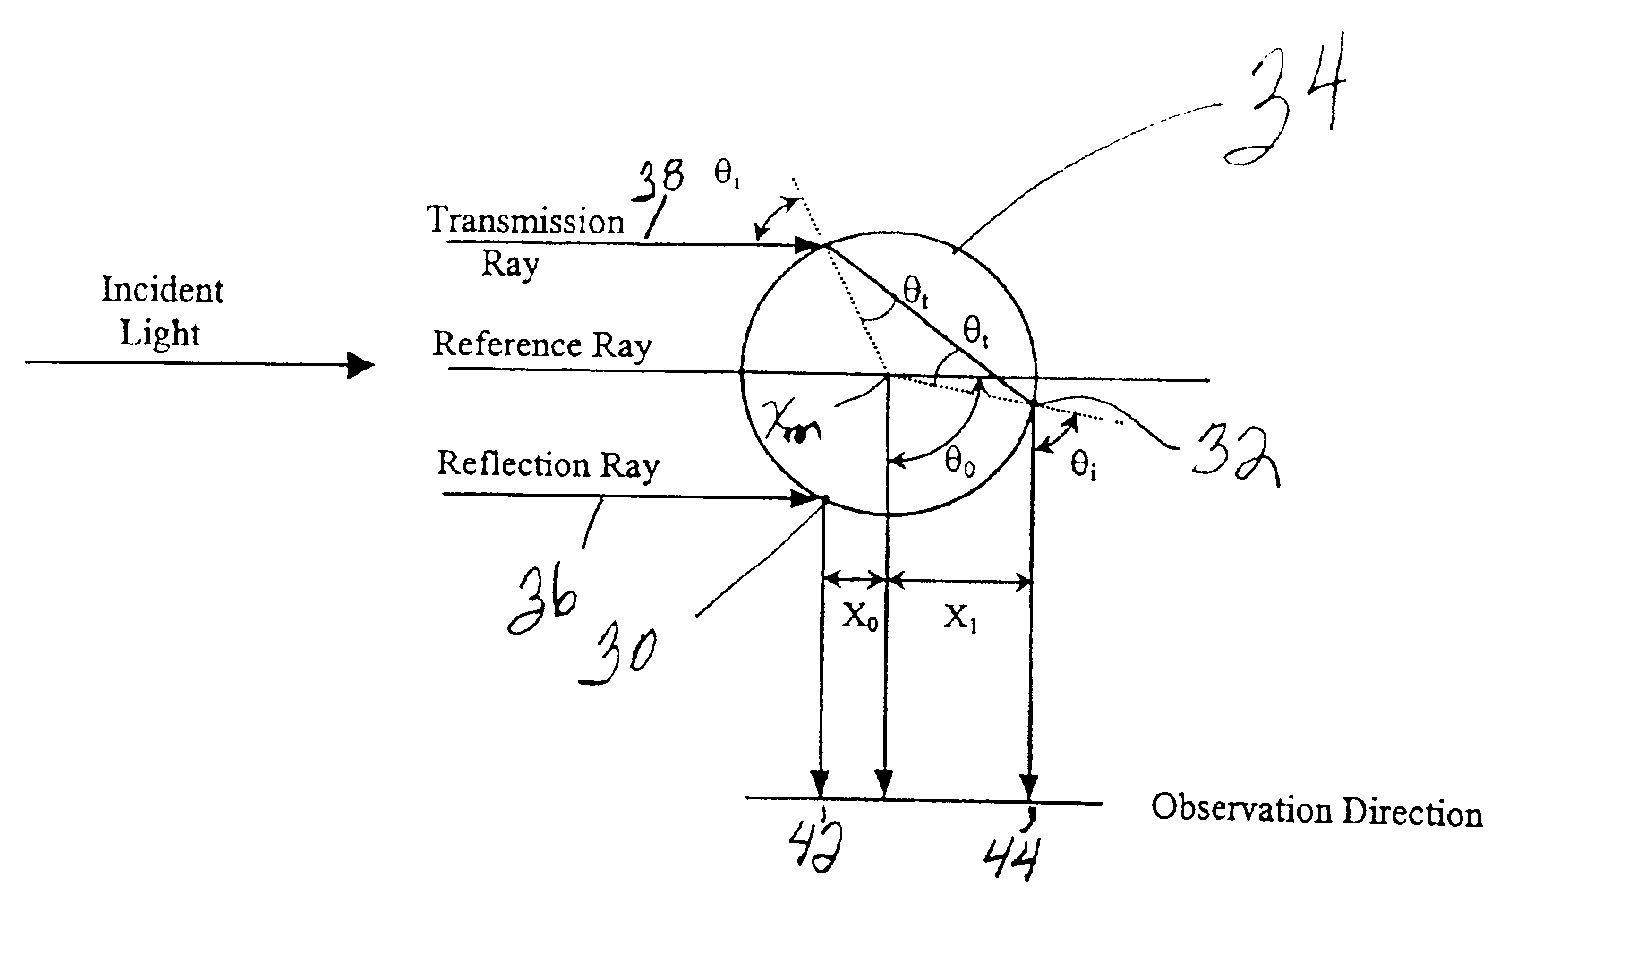 Planar particle/droplet size measurement technique using digital particle image velocimetry image data